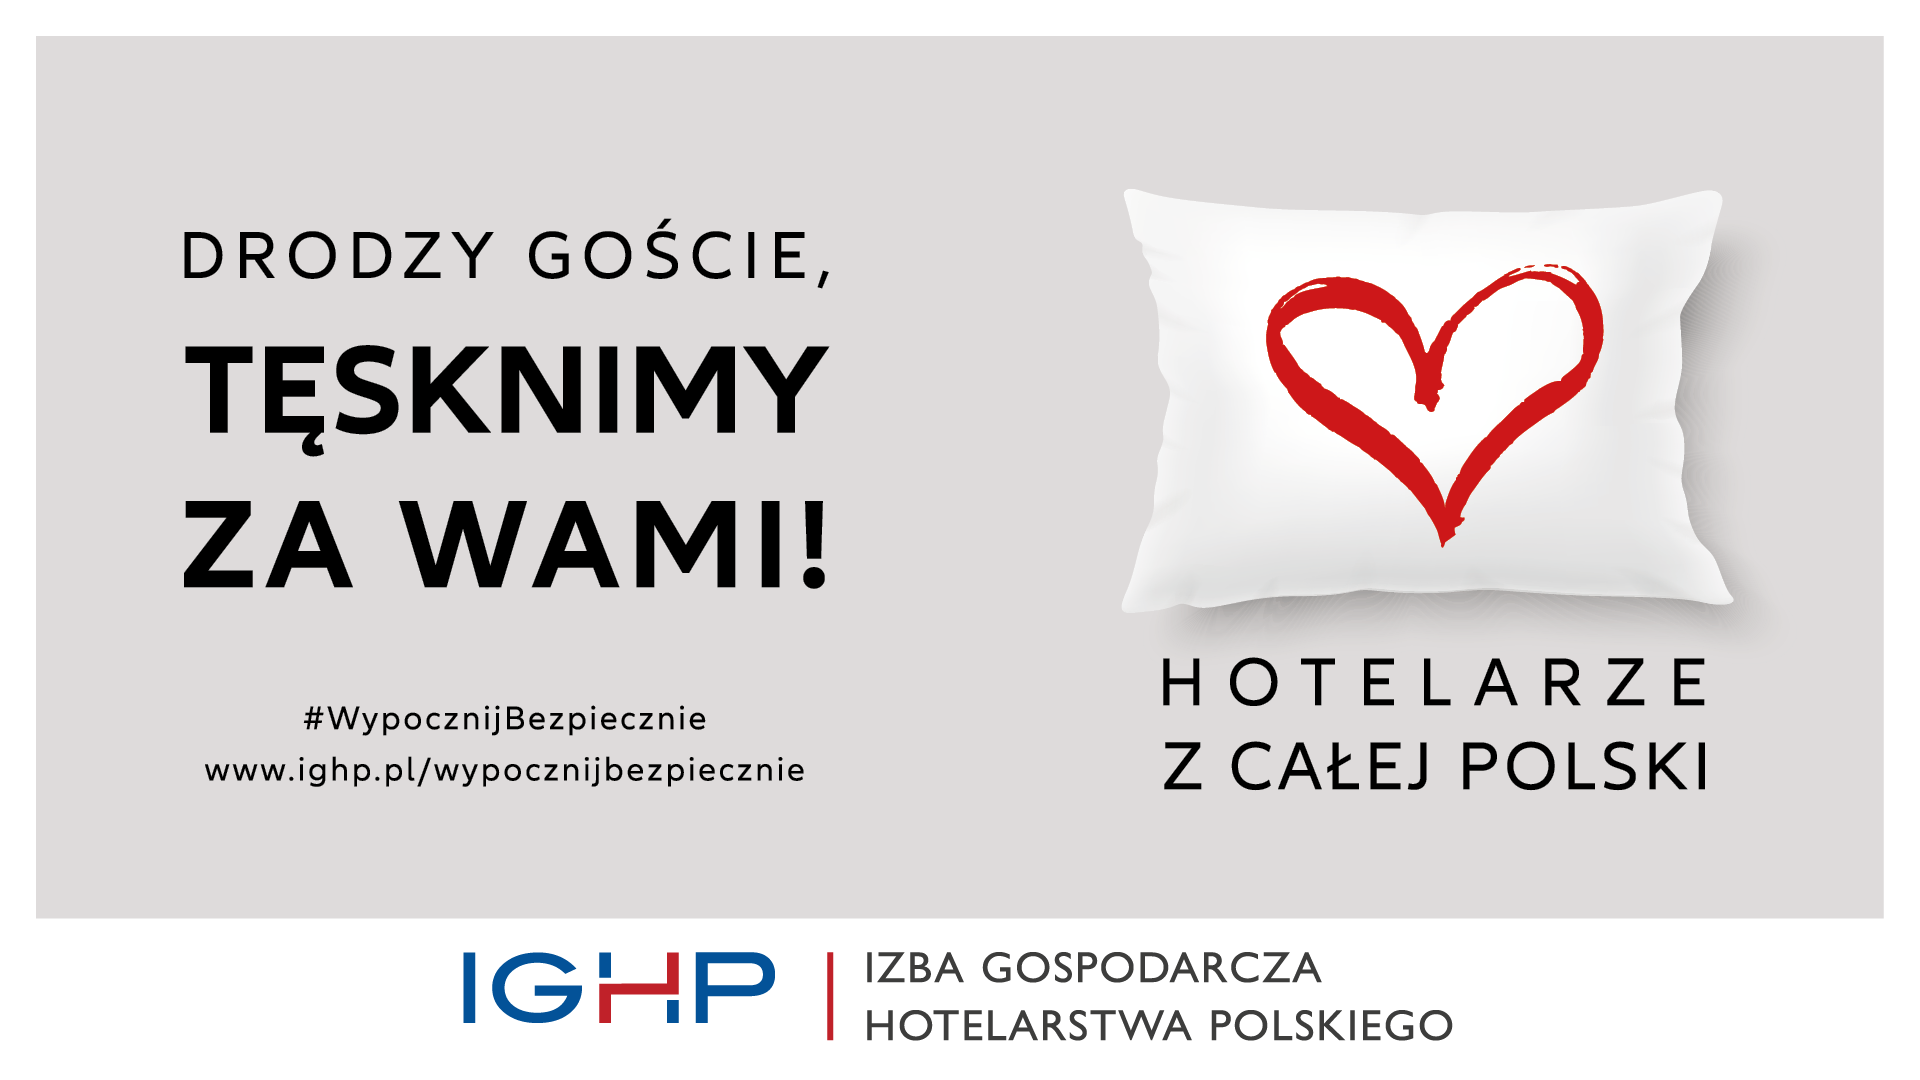 Proto Izba Gospodarcza Hotelarstwa Polskiego Startuje Z